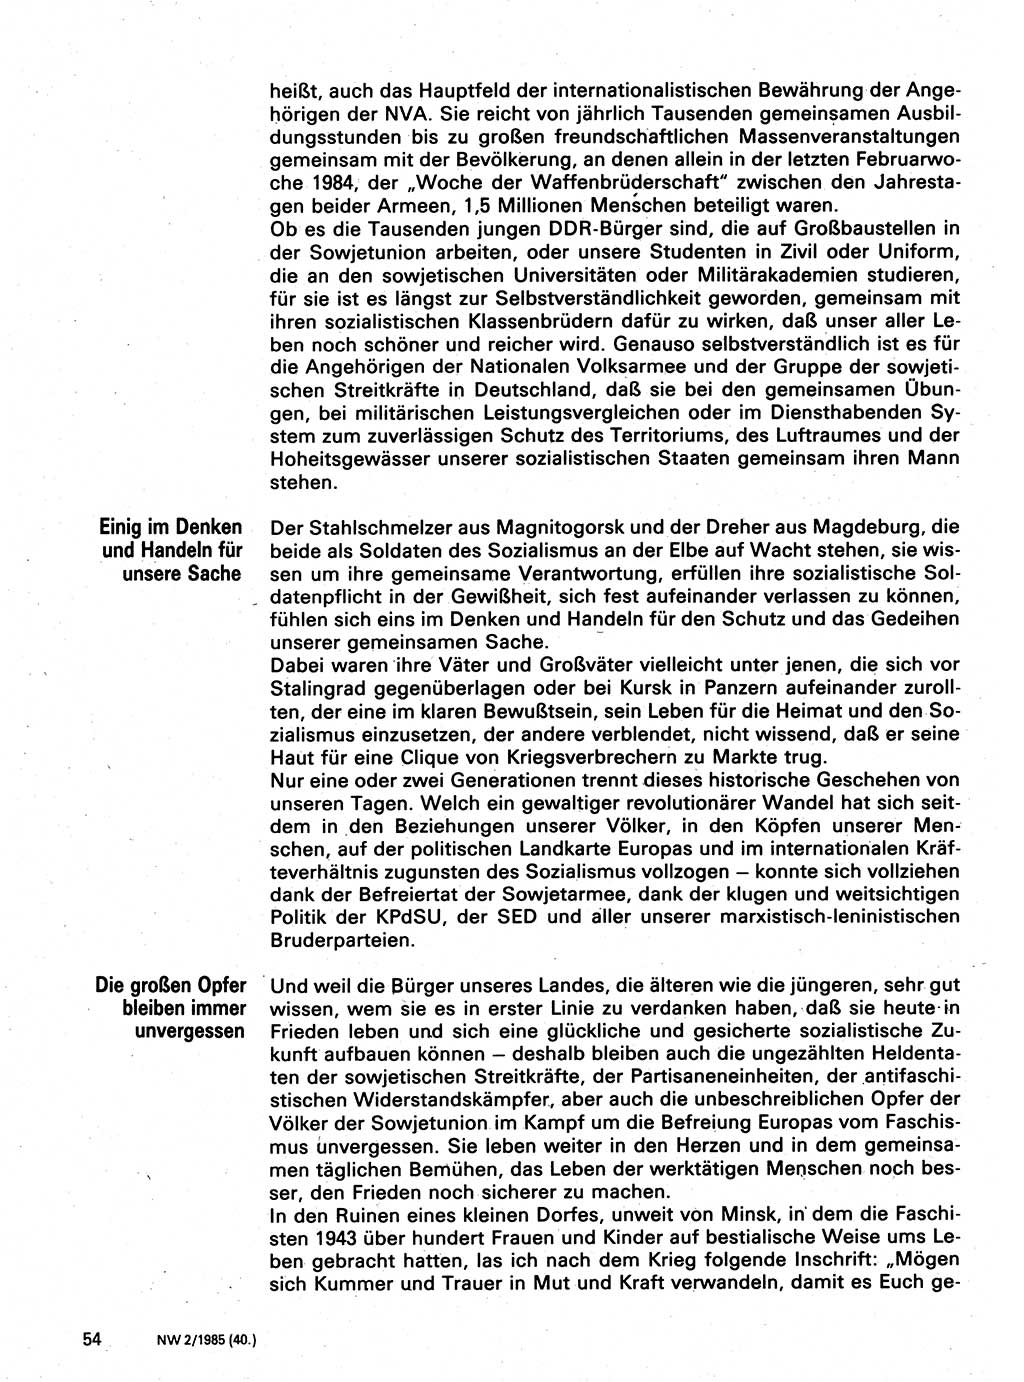 Neuer Weg (NW), Organ des Zentralkomitees (ZK) der SED (Sozialistische Einheitspartei Deutschlands) für Fragen des Parteilebens, 40. Jahrgang [Deutsche Demokratische Republik (DDR)] 1985, Seite 54 (NW ZK SED DDR 1985, S. 54)